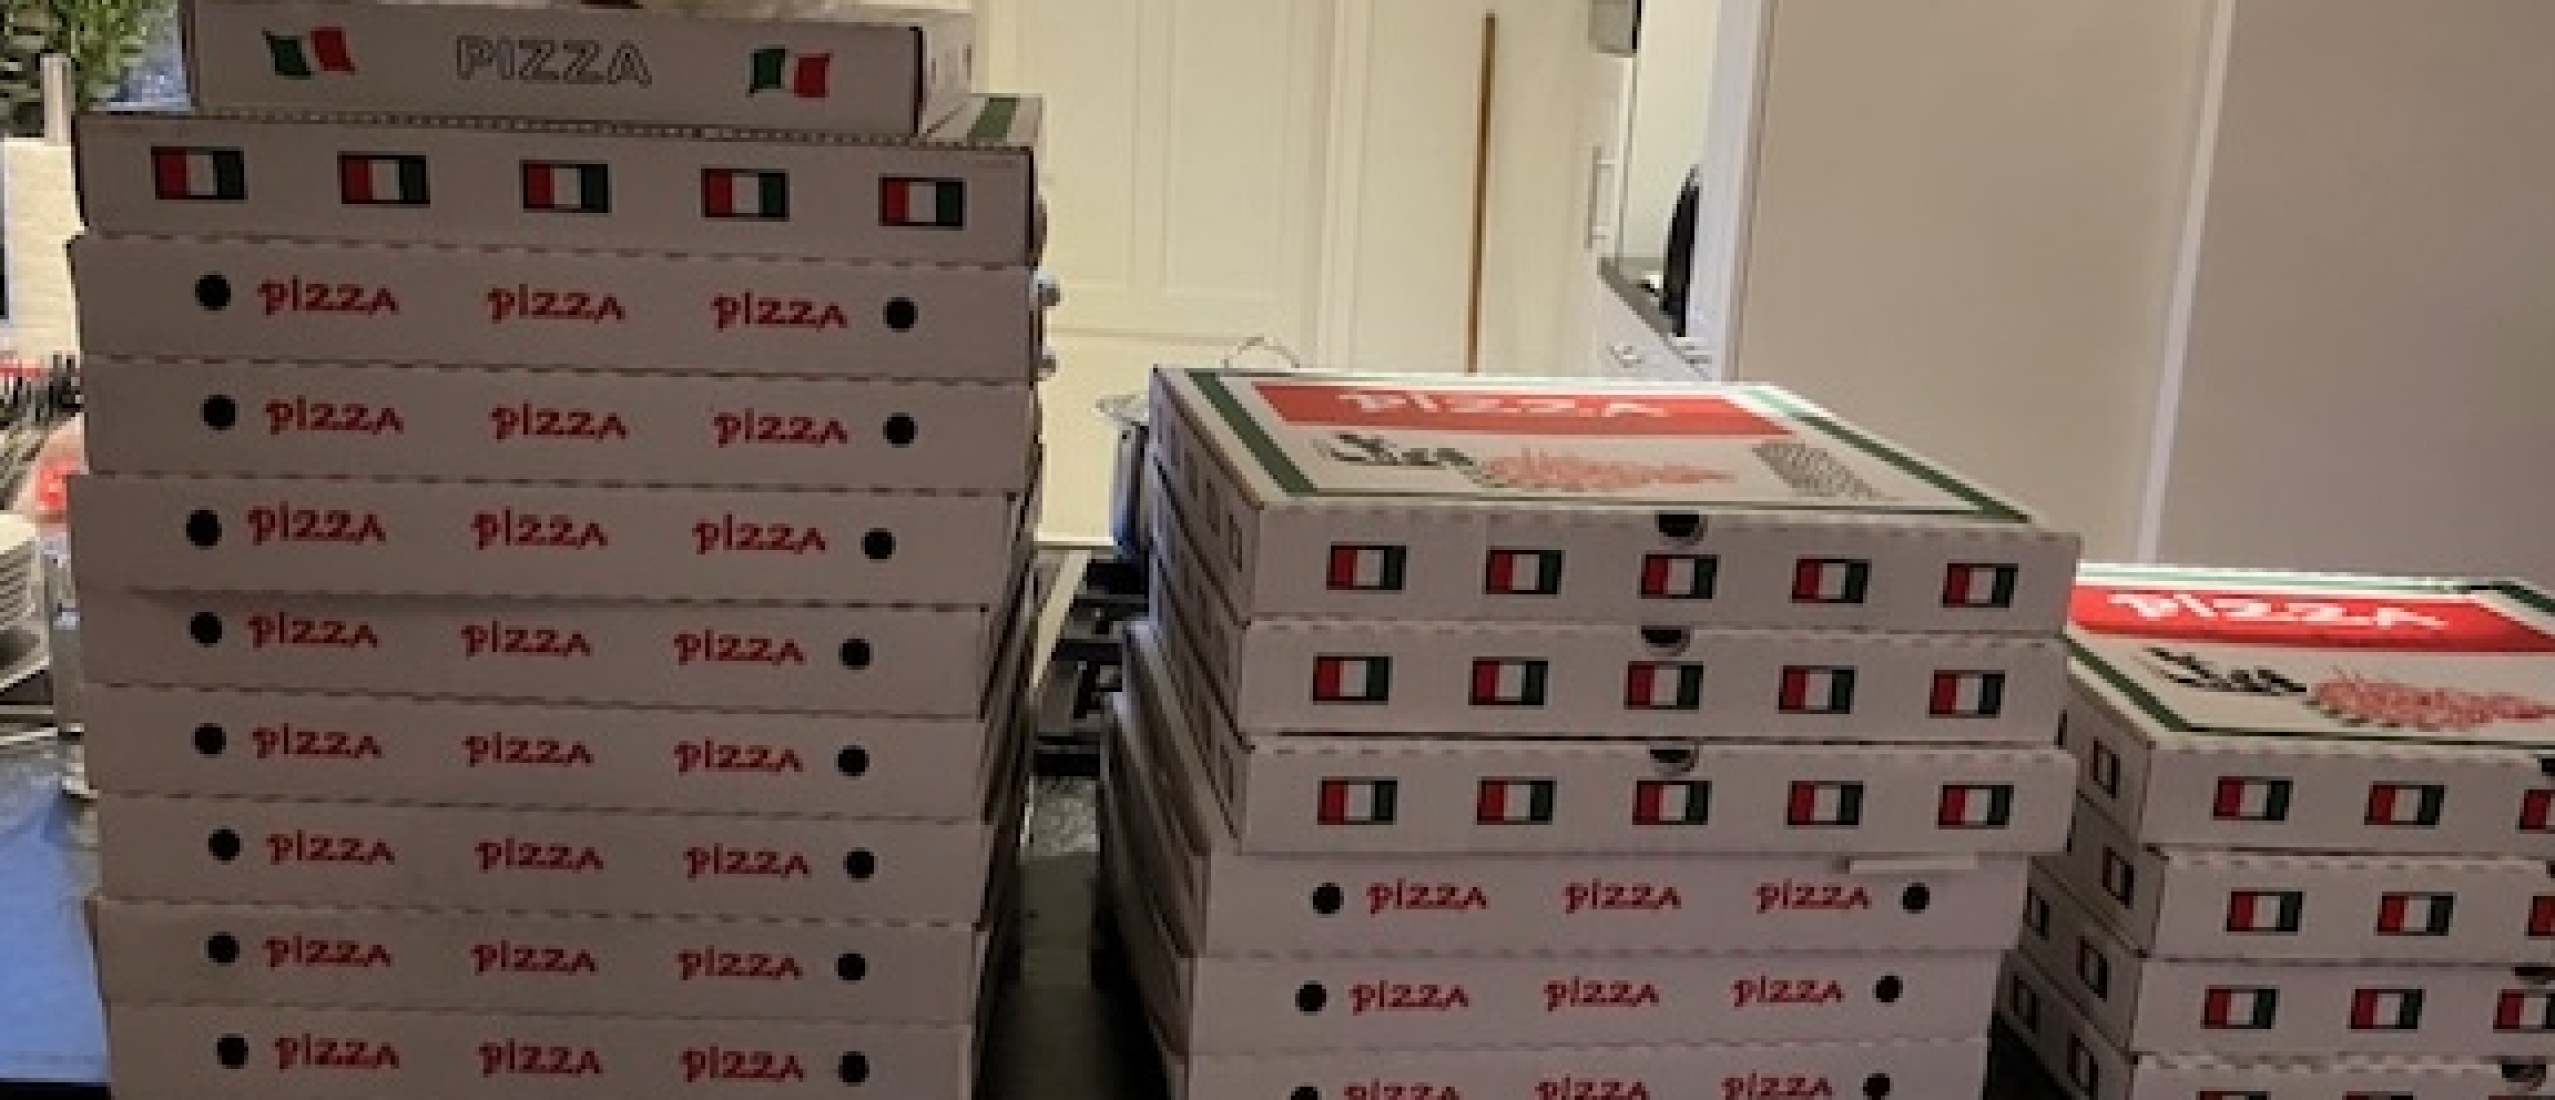 Kunt u twintig pizza's bezorgen?